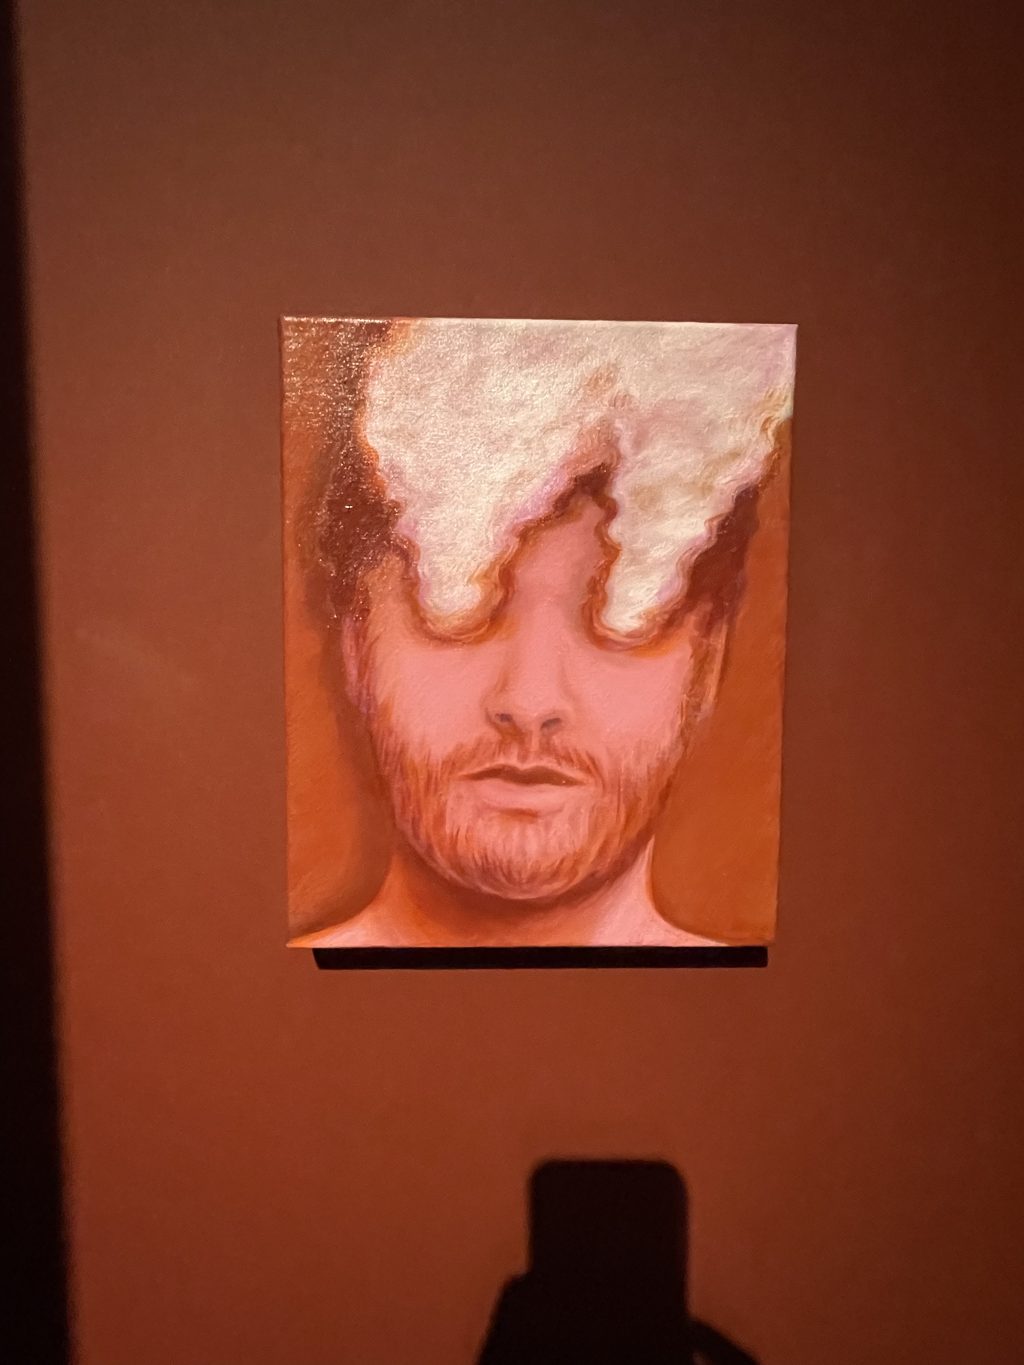 Gemälde in Rottönen zeigt das Gesicht jungne Mannes, aus dessen Augen Rauchwolken aufsteigen